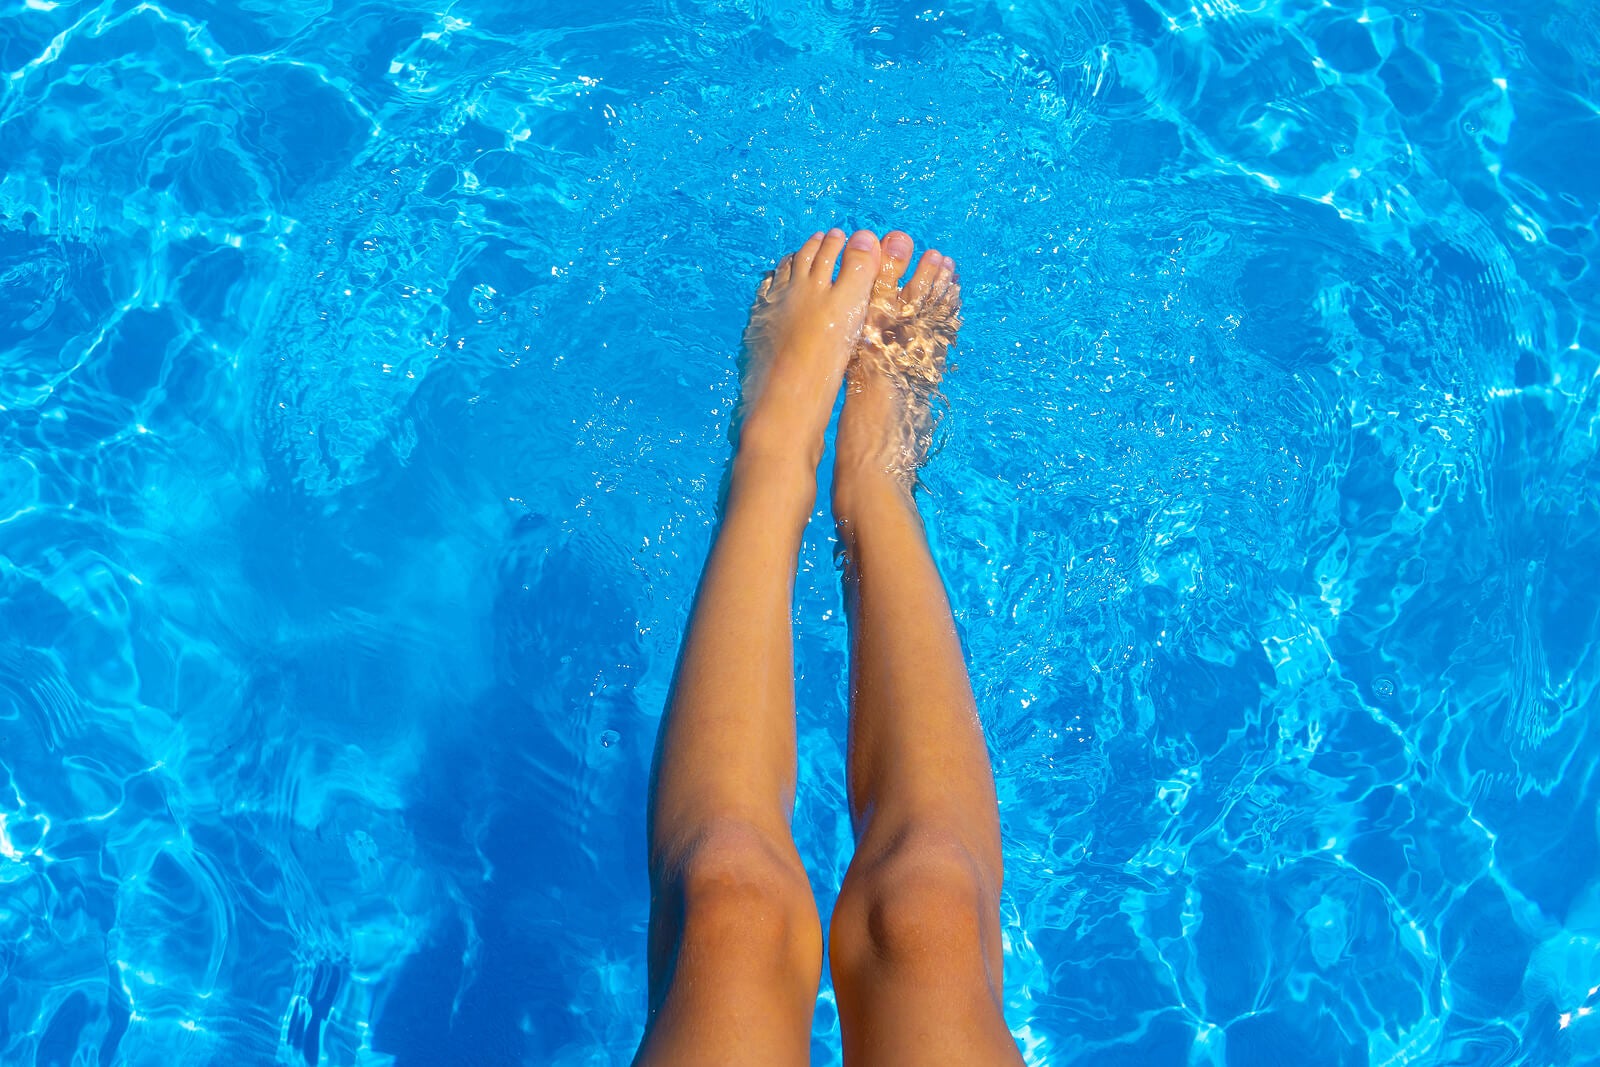 Es recomendable mojarse un poco antes de sumergirse del todo en el agua.